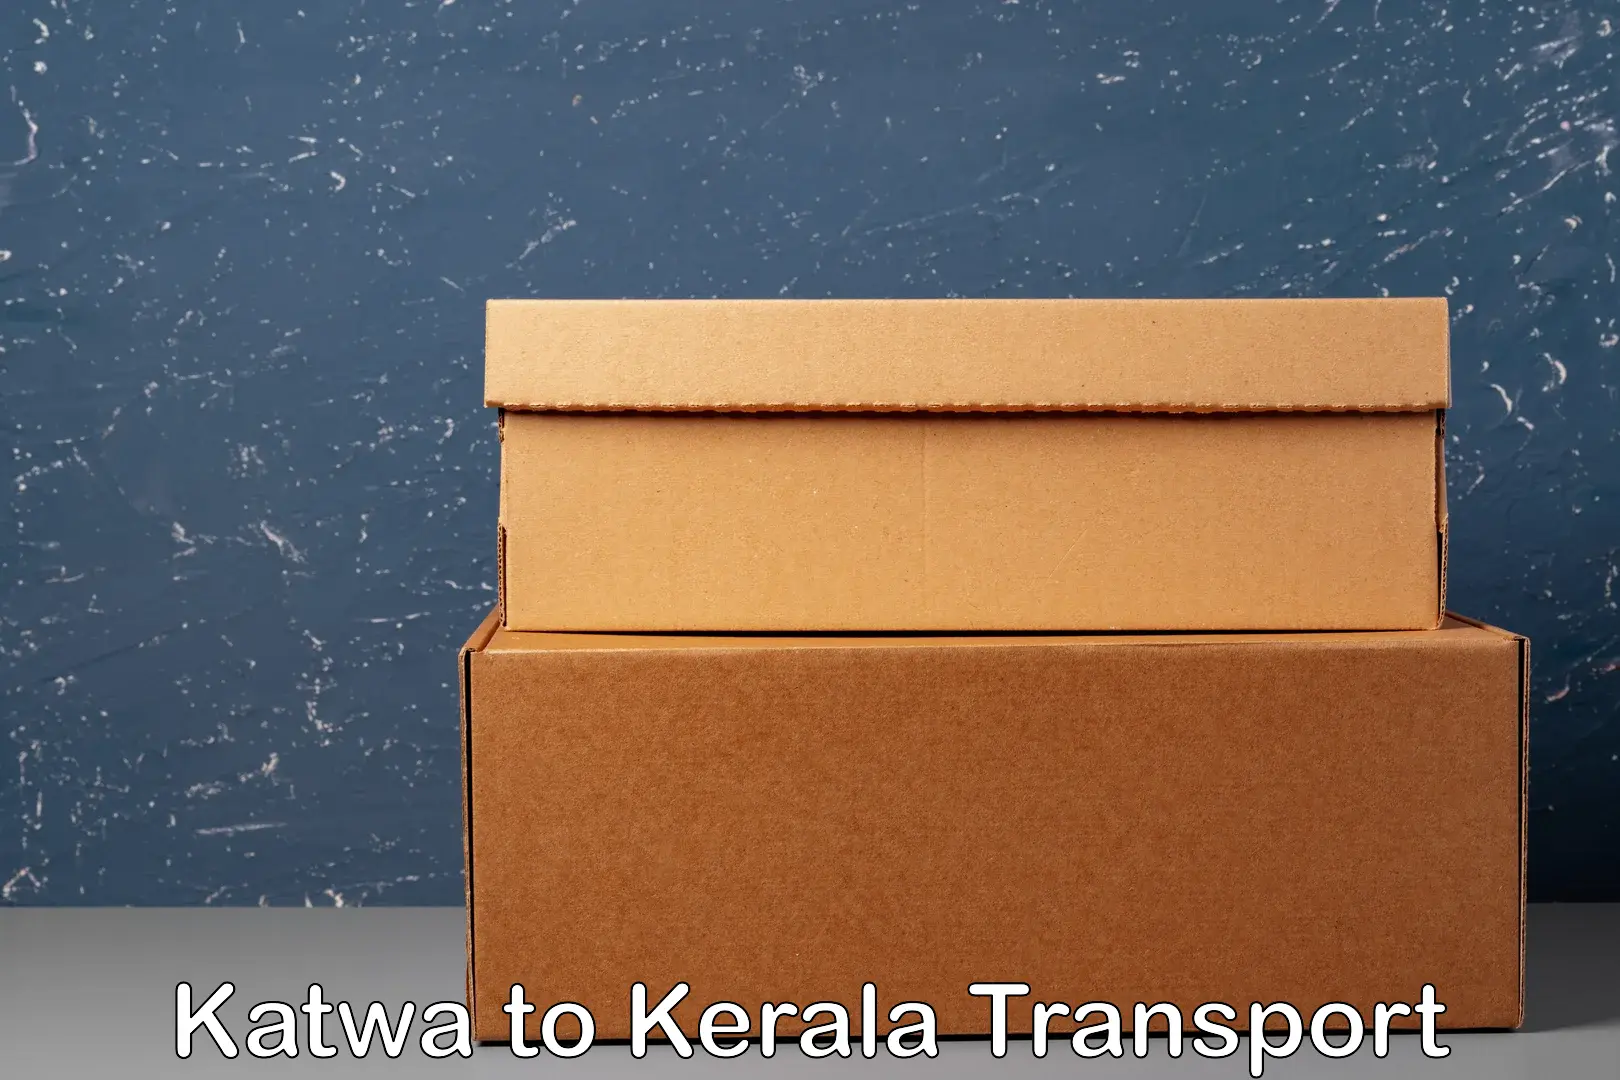 Nearby transport service Katwa to Malappuram